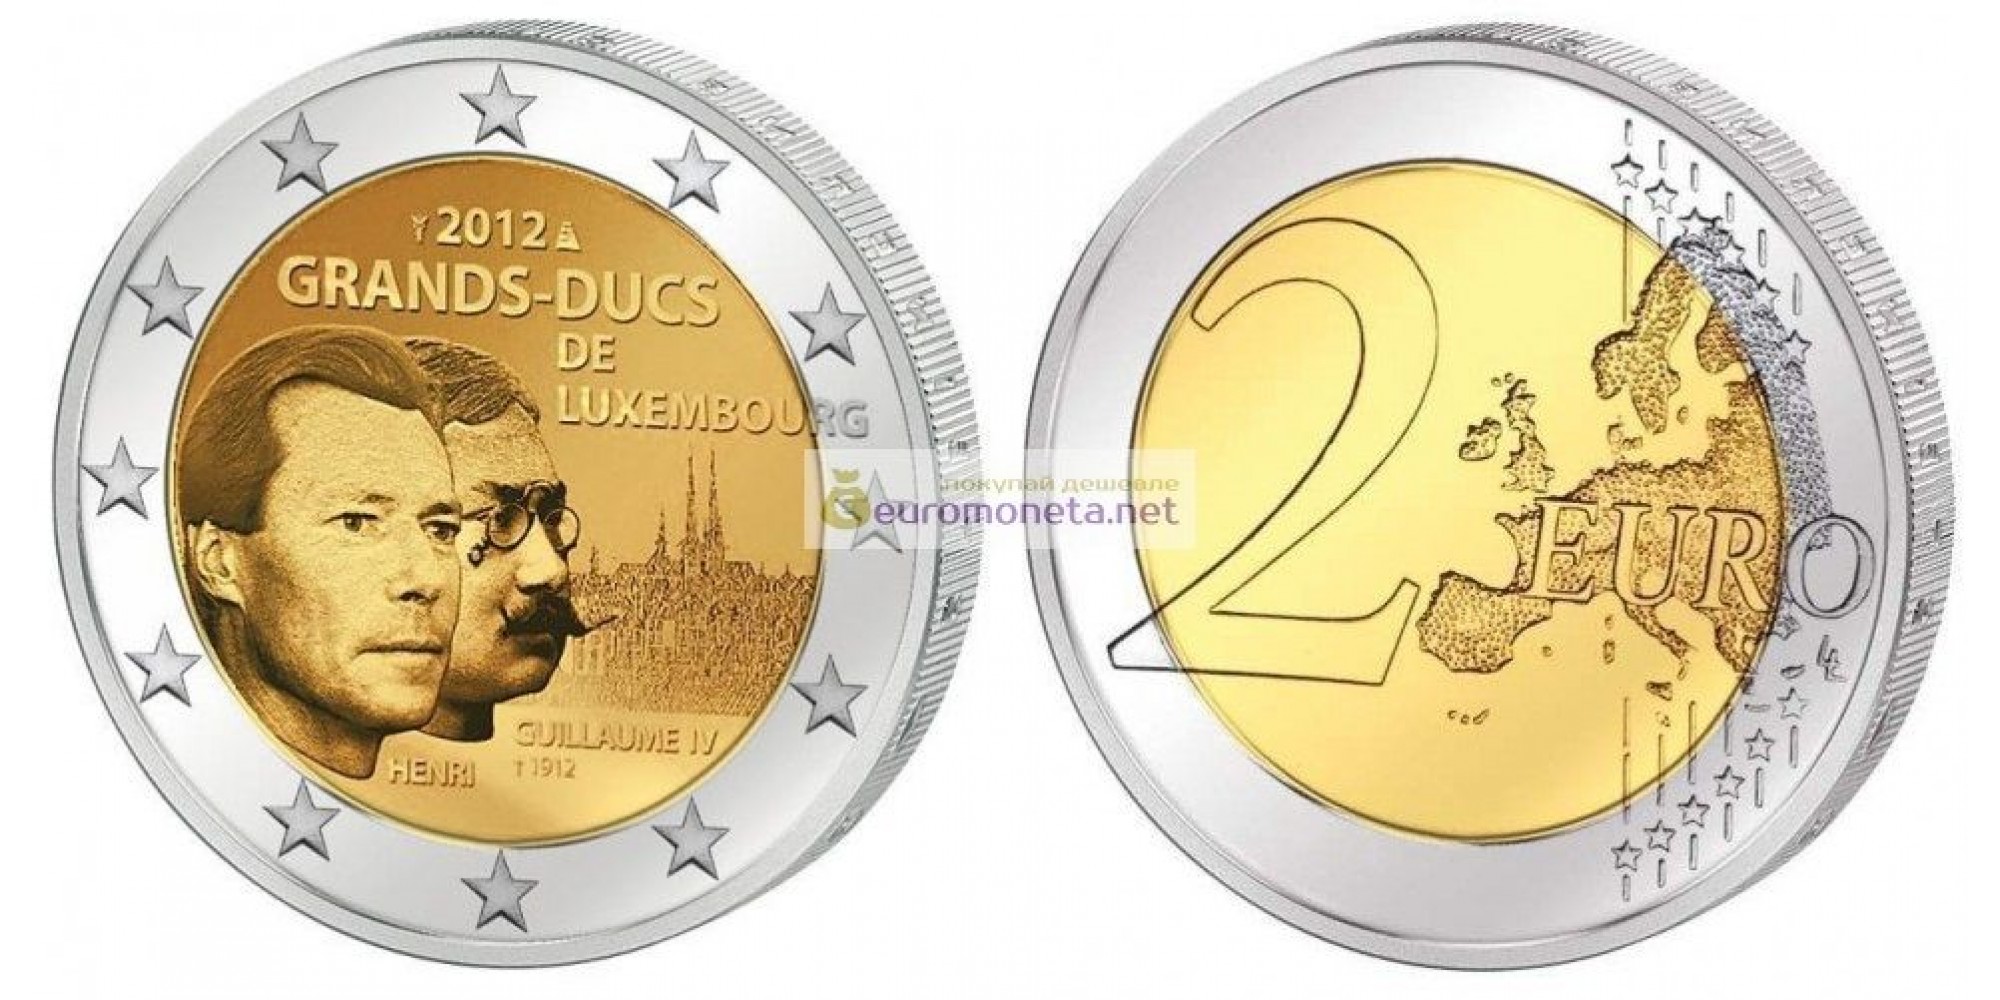 Люксембург 2 евро 2012 год 100 лет со дня смерти Великого Герцога Люксембурга Вильгельма IV, биметалл АЦ из ролла